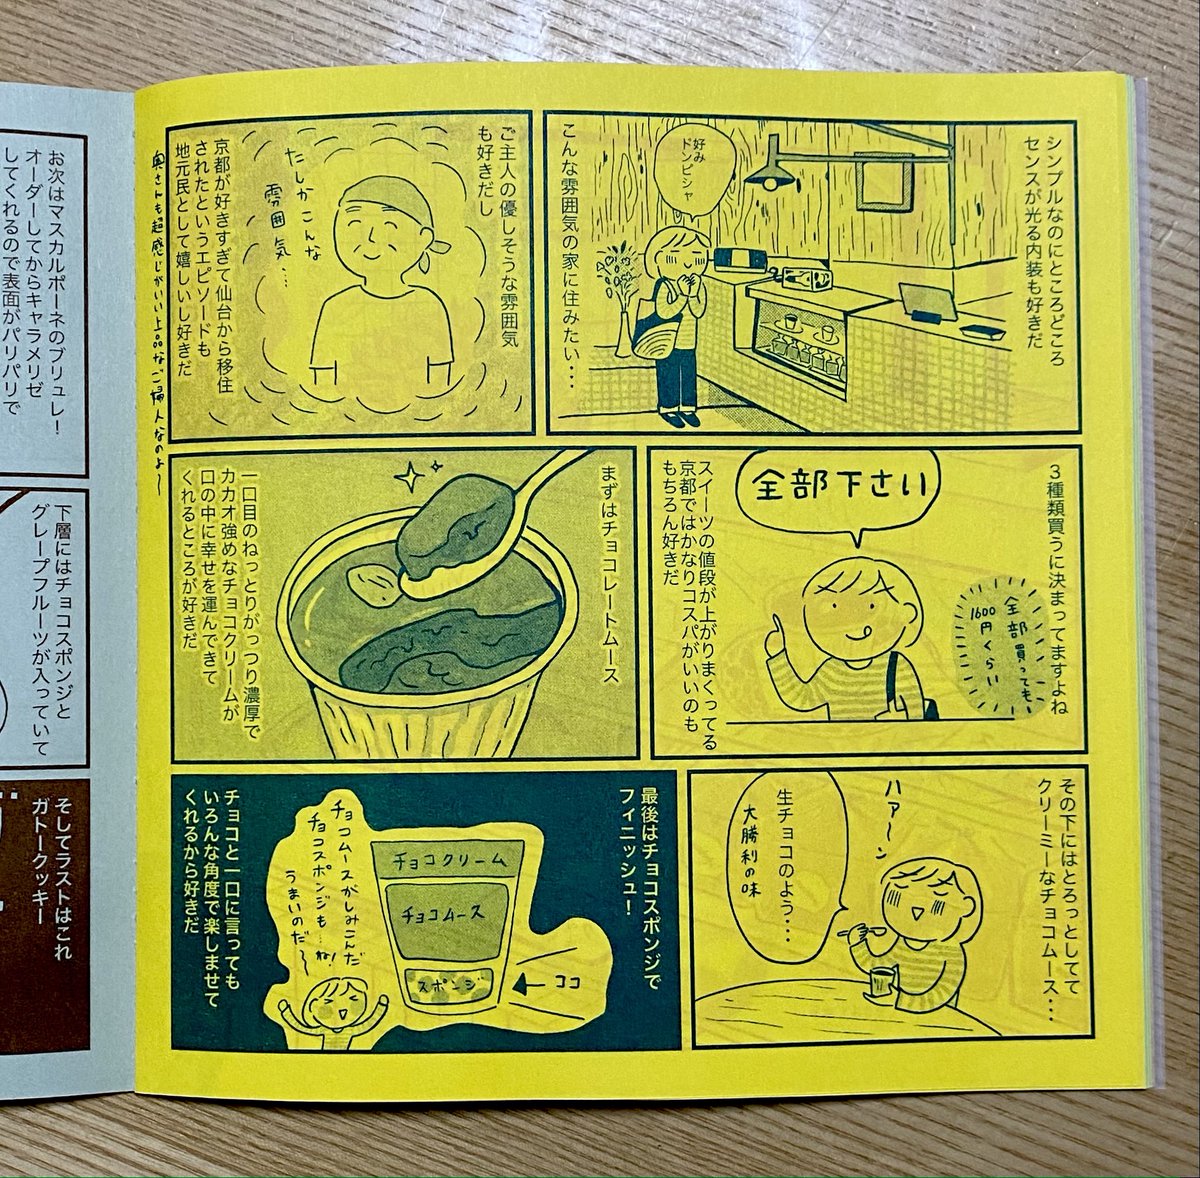 【通販受付】新刊出ました〜!!!!
京都のおいしいオヤツを集めたコミックエッセイです♡
コロナで大変な時期だけどテイクアウトいけるお店&超大好きなおやつばかり紹介してます♫宜しくおねがいします!紙版&ダウンロード版両方あります。

https://t.co/35ZtyqOYIh 